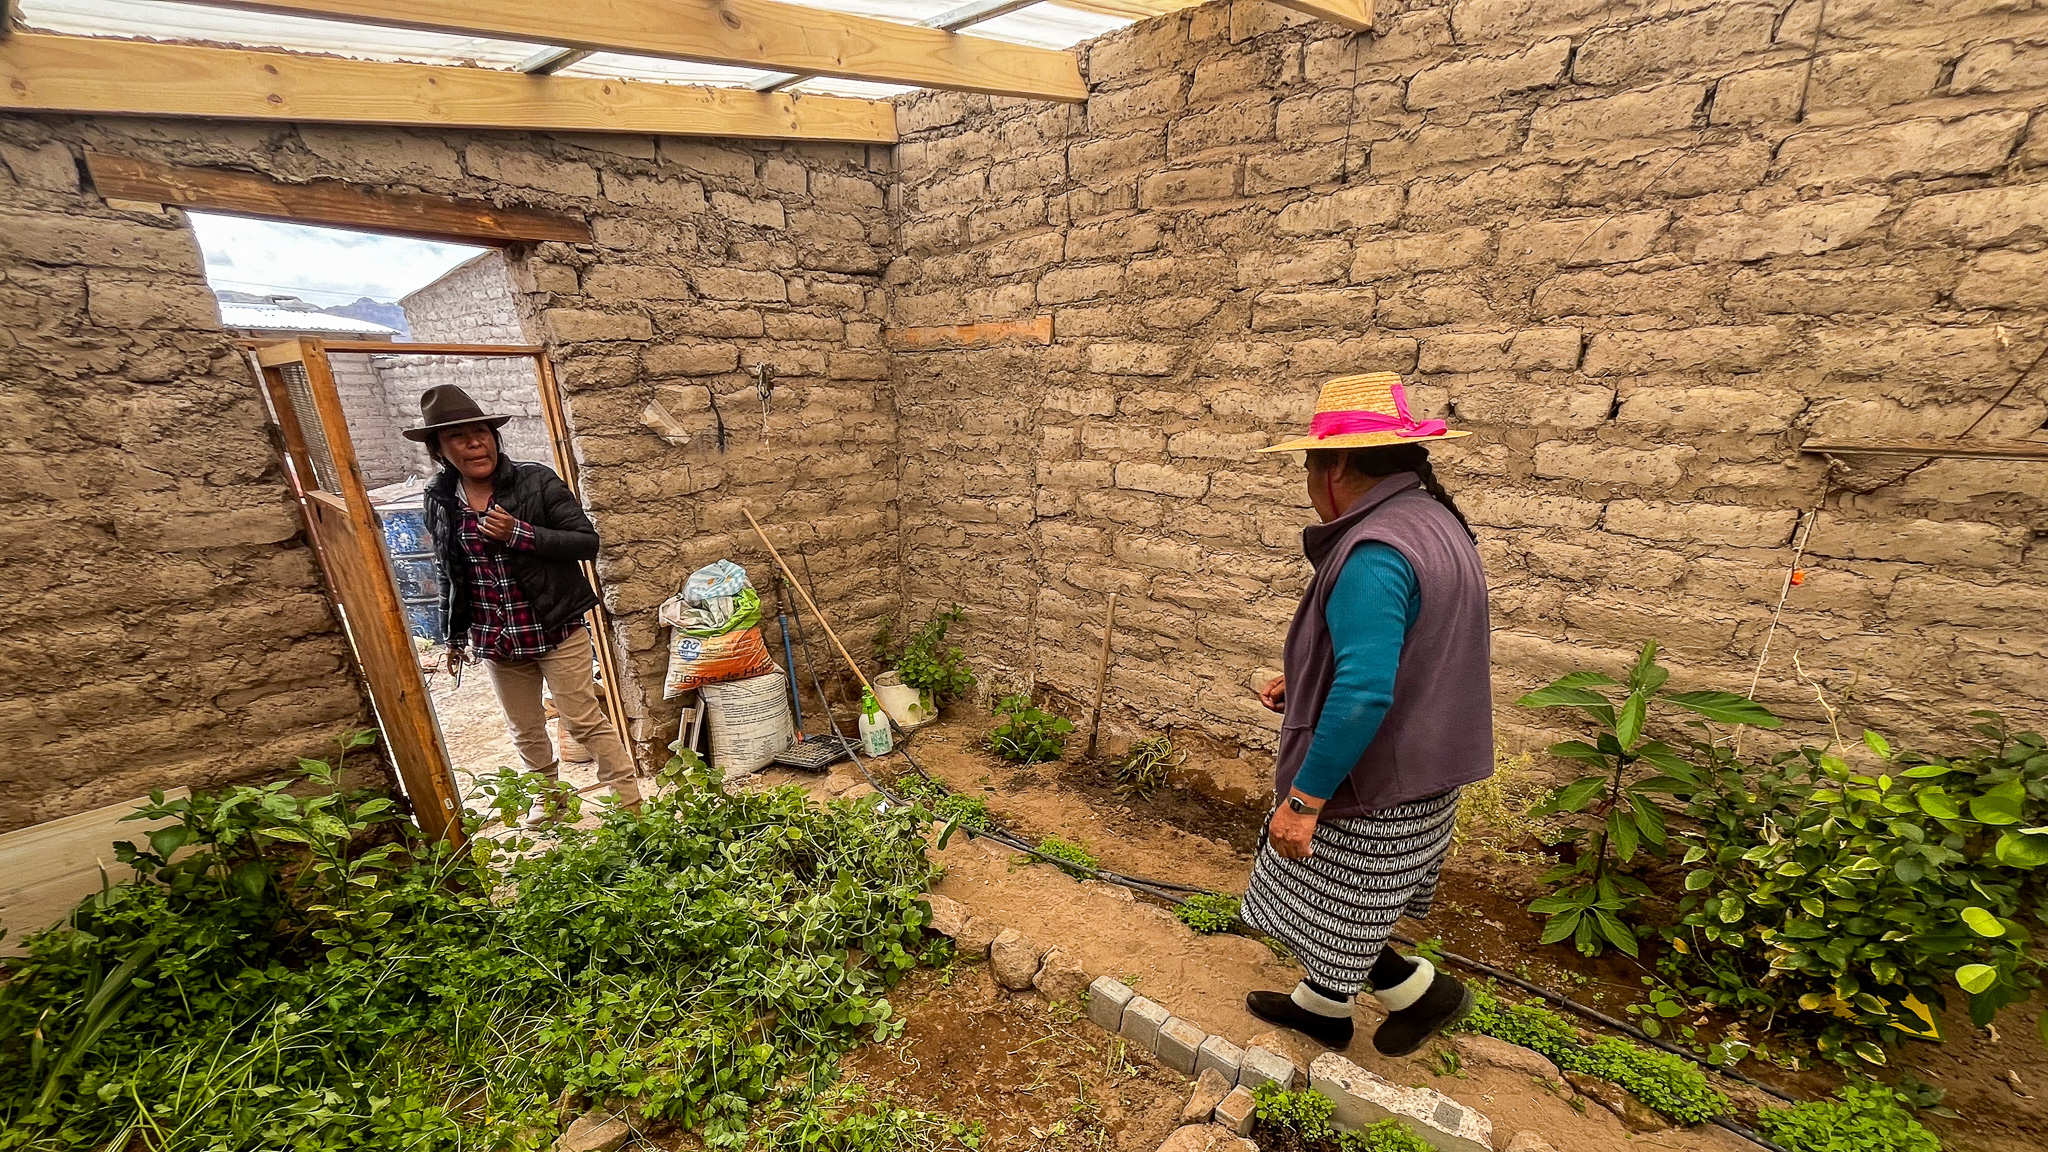 Invernaderos construidos con adobe ayudan al autoconsumo con agricultores del altiplano